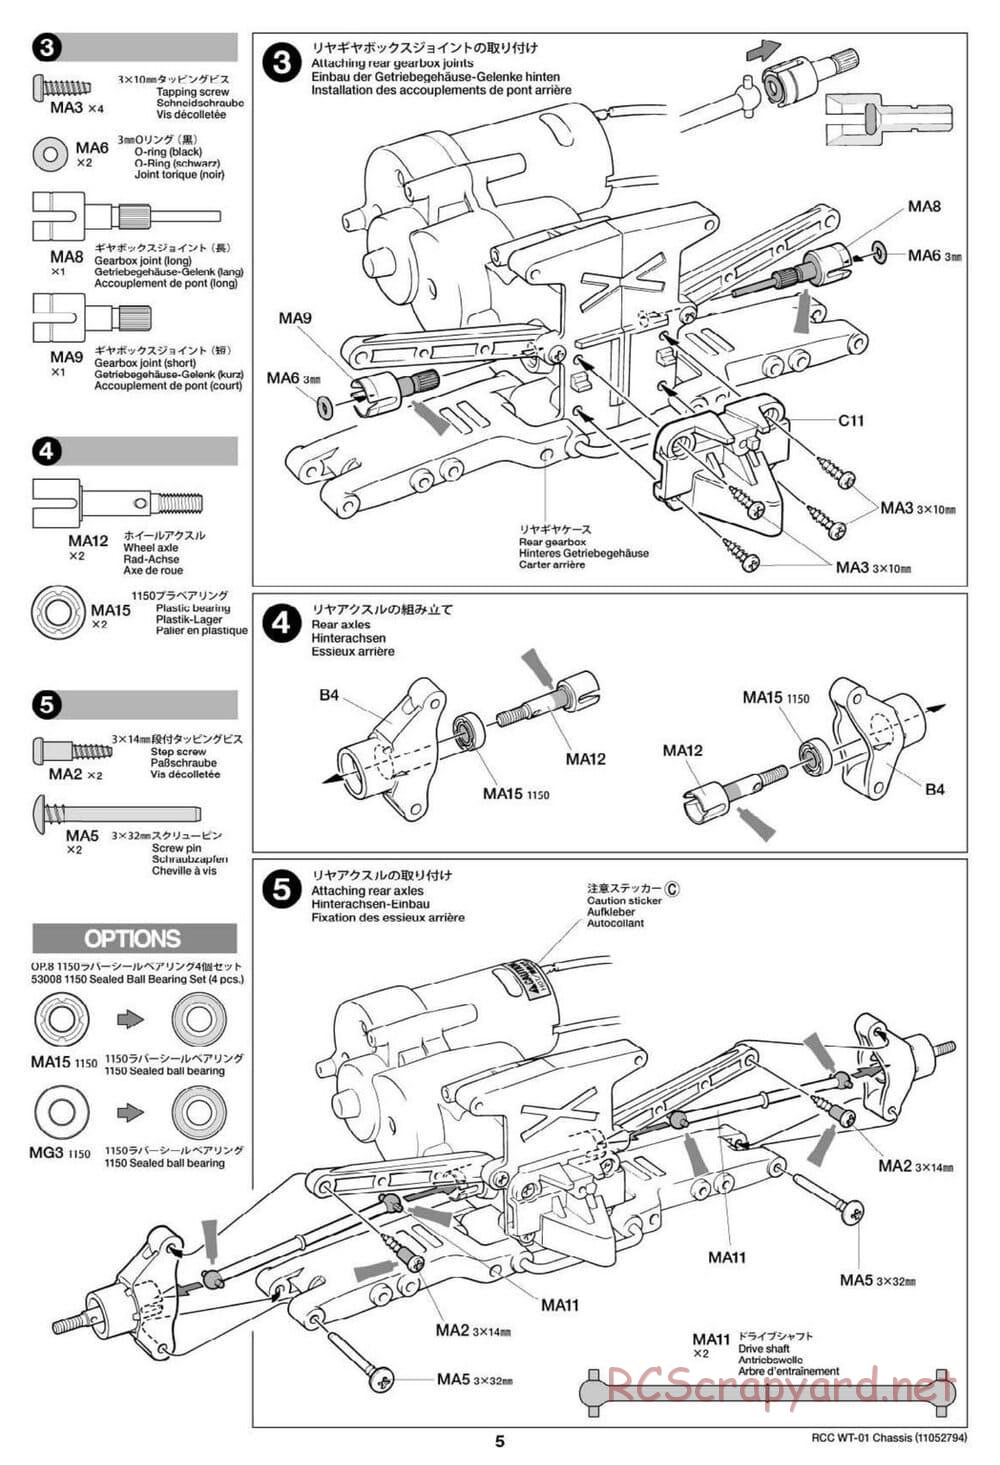 Tamiya - WT-01 Chassis - Manual - Page 5